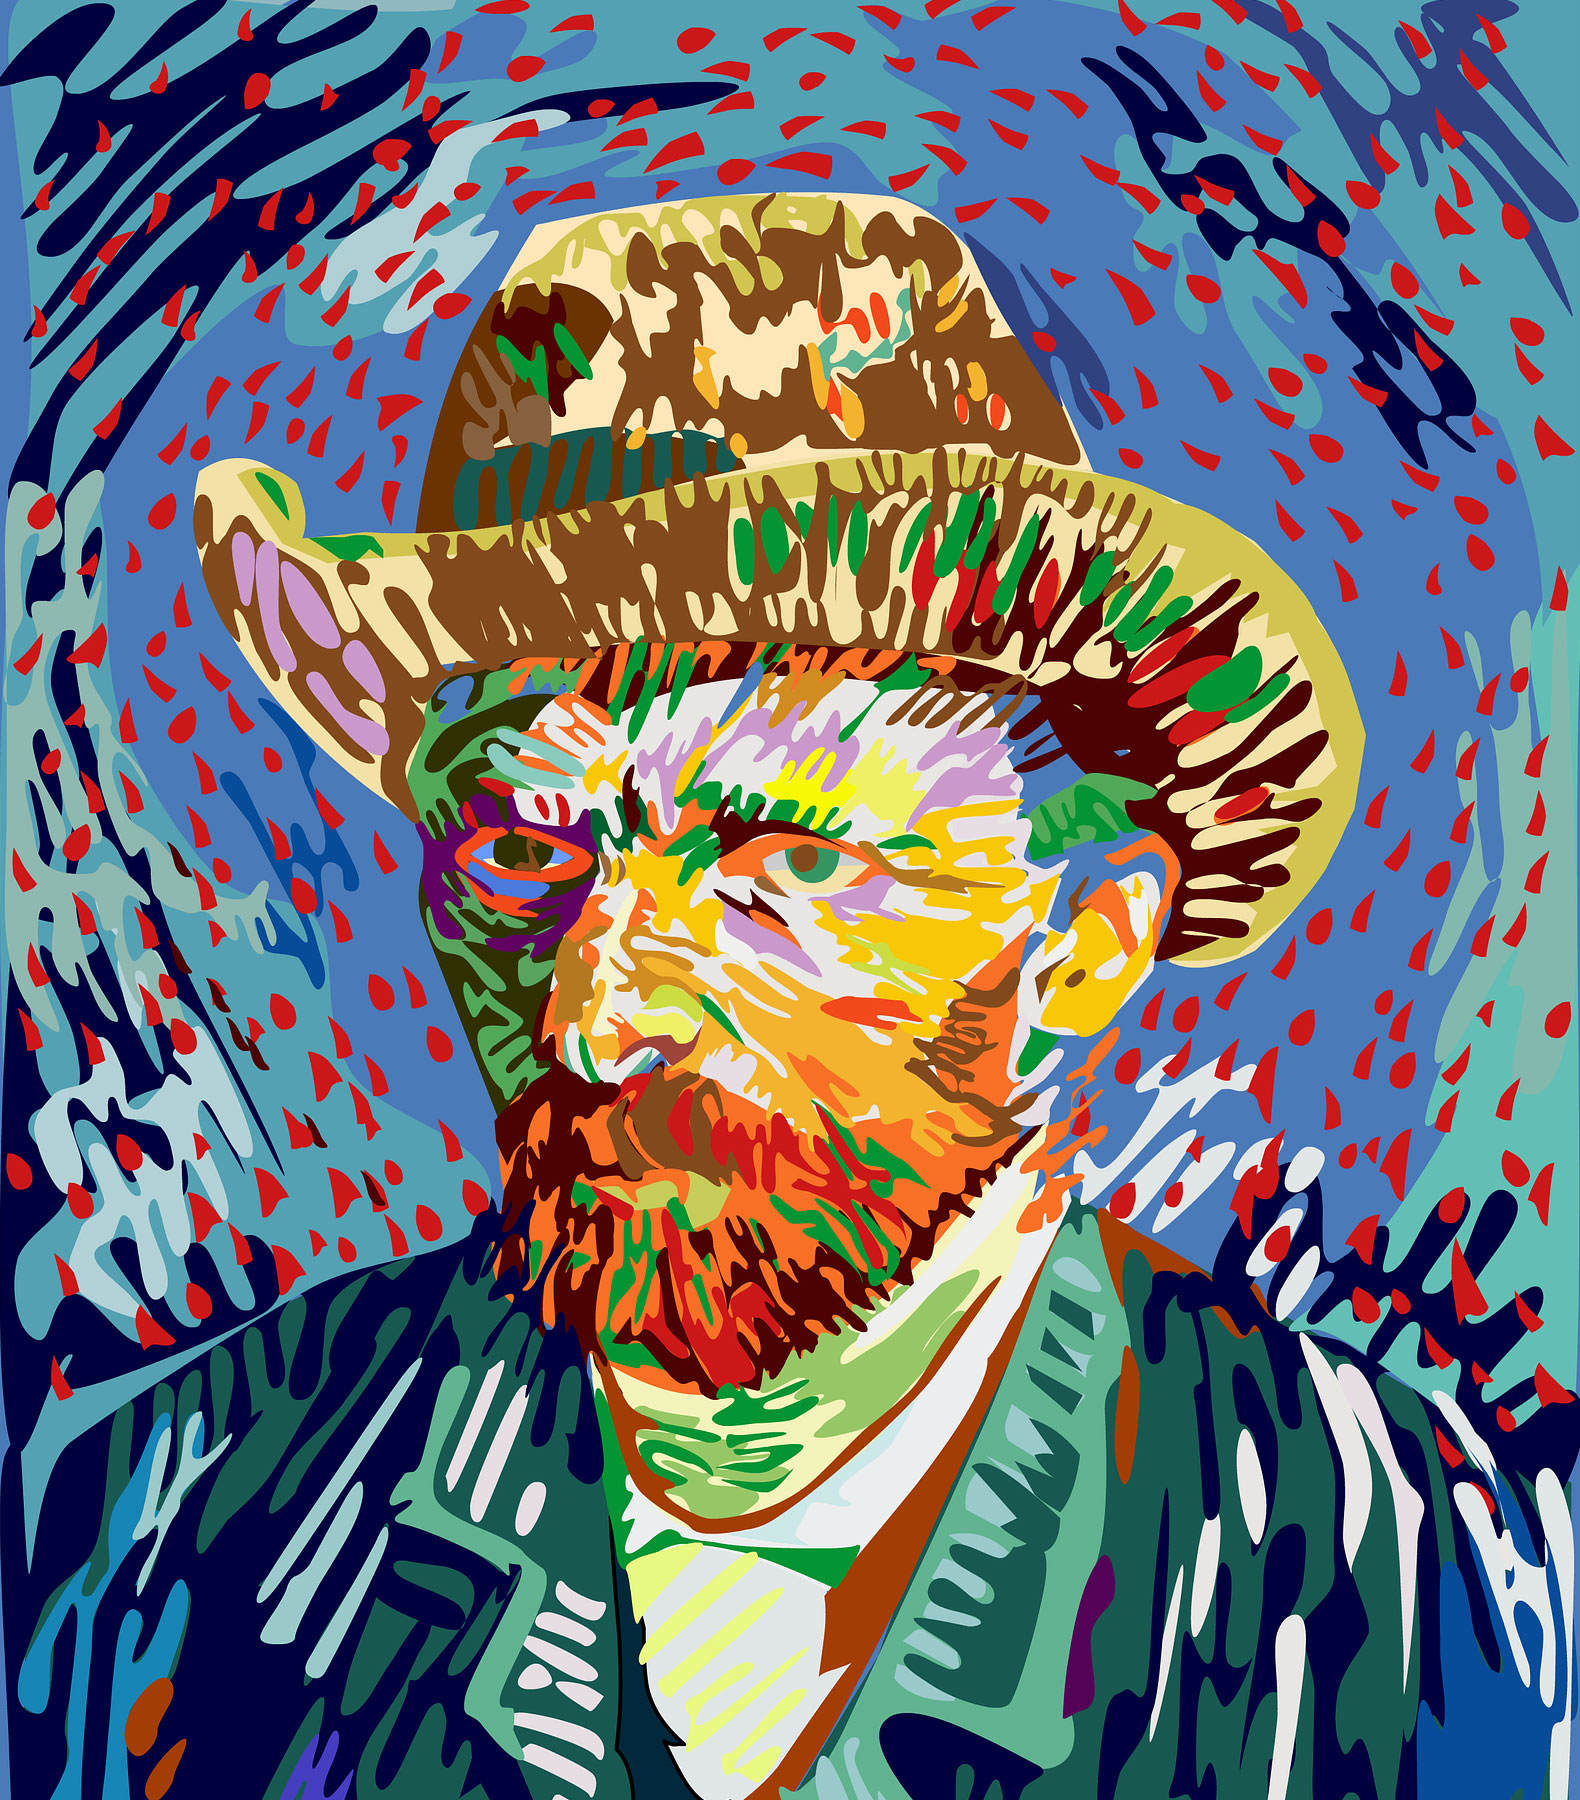 Vicent van Gogh